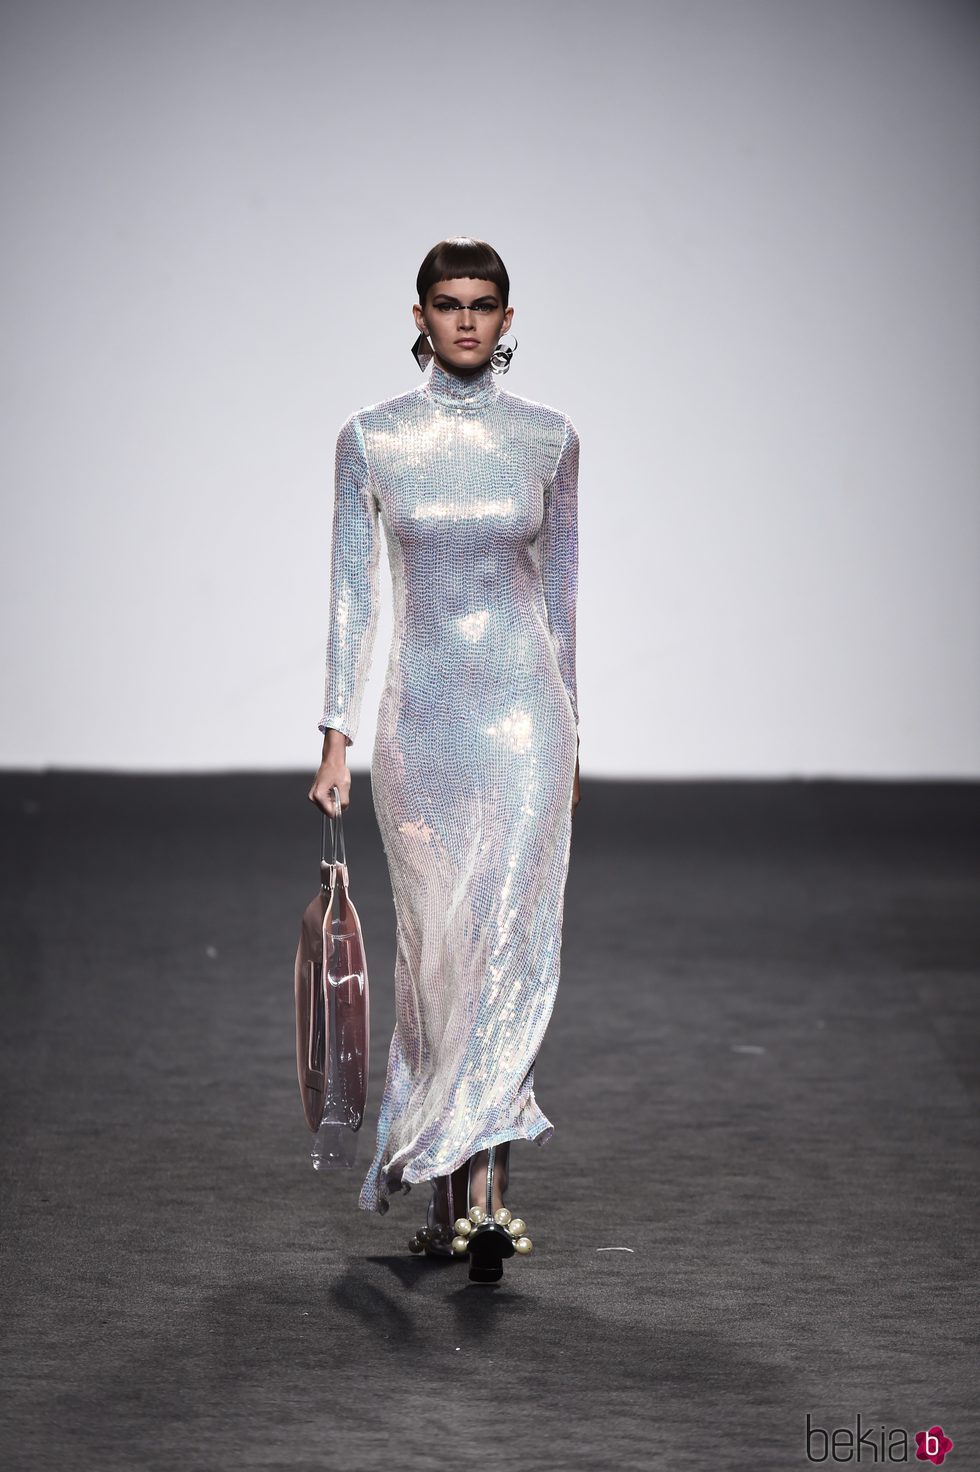 Vestido de lentejuelas de María Escote de la campaña otoño/invierno 2018/2019 en la Madrid Fashion Week